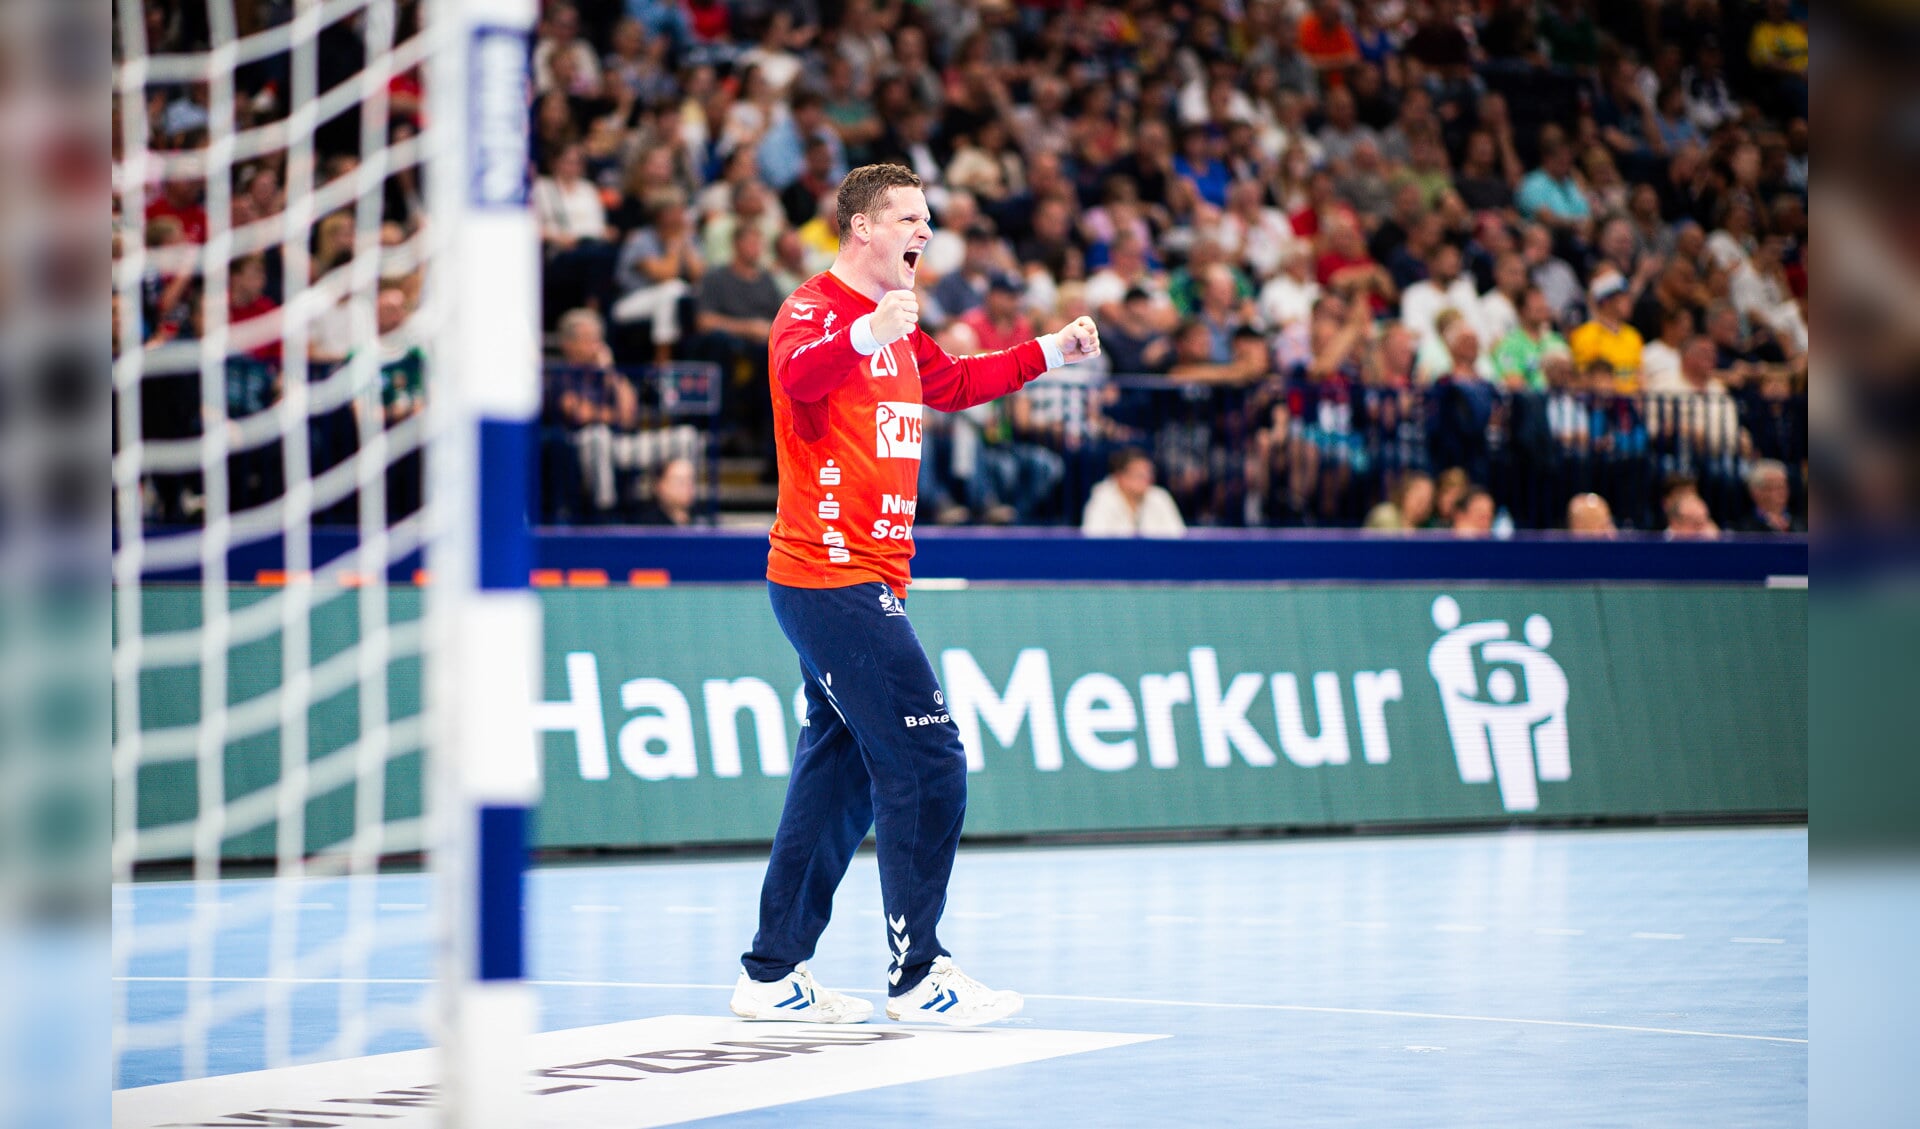 Kevin Møller und die SG Flensburg-Handewitt ziehen verdient ins Finale ein.